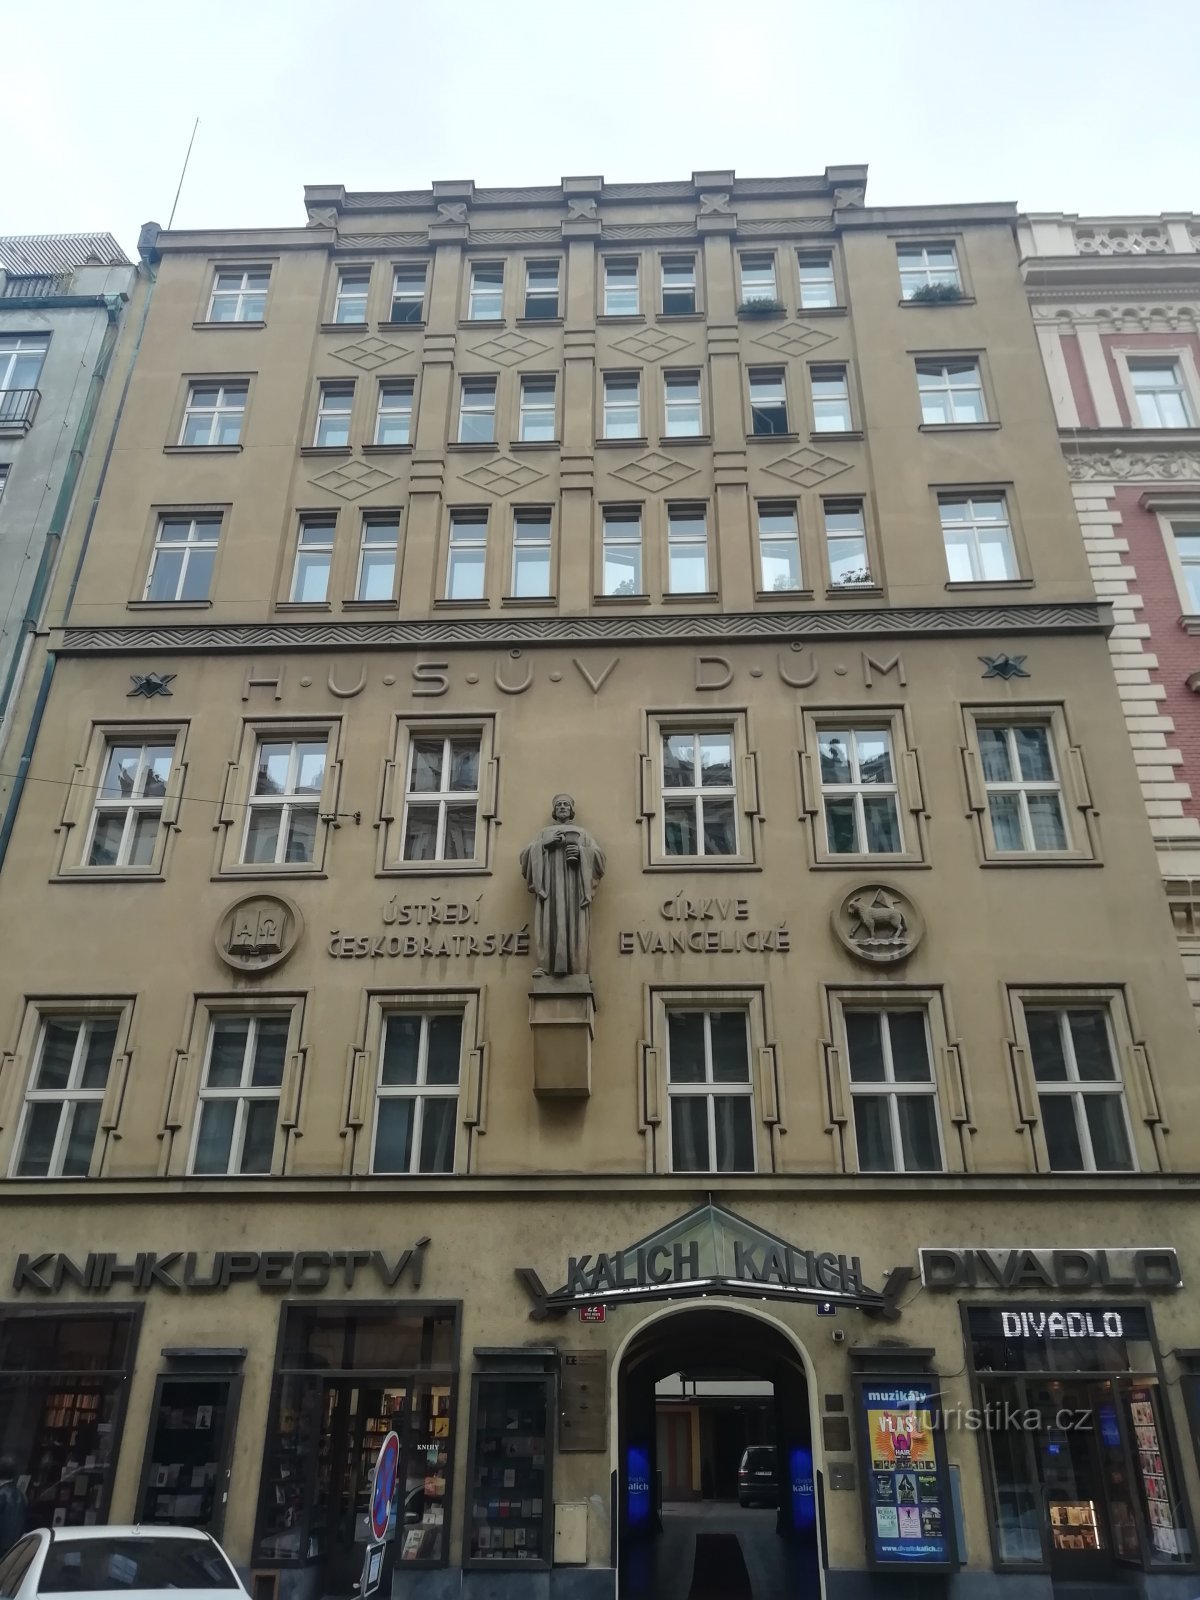 uma cornija acima da inscrição Husův Dům separa os pisos recém-adicionados dos originais